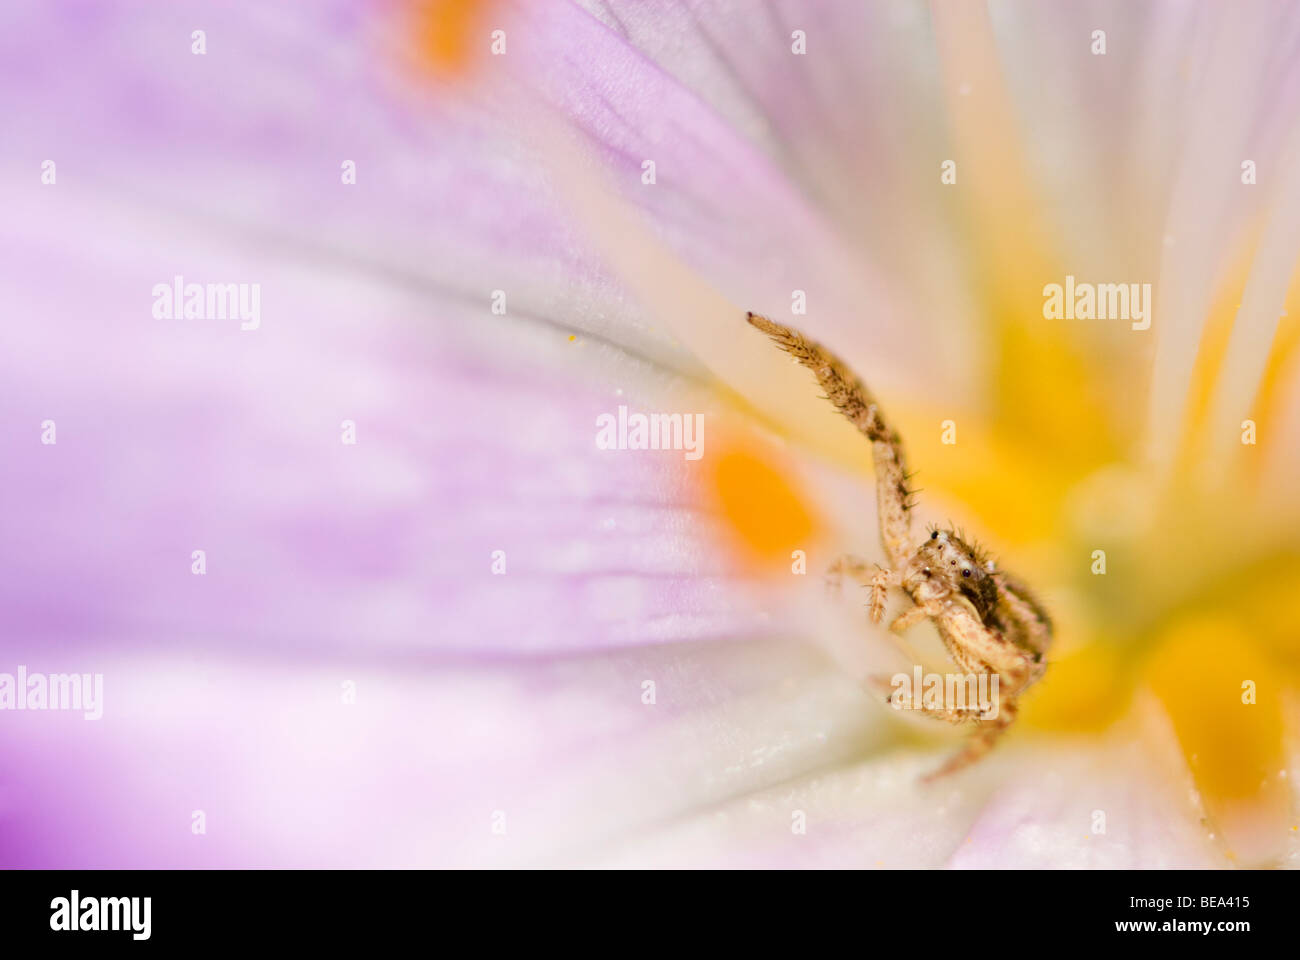 crab spider in an autumn crocus flower; krabspin in bloem herfsttijloos; Stock Photo